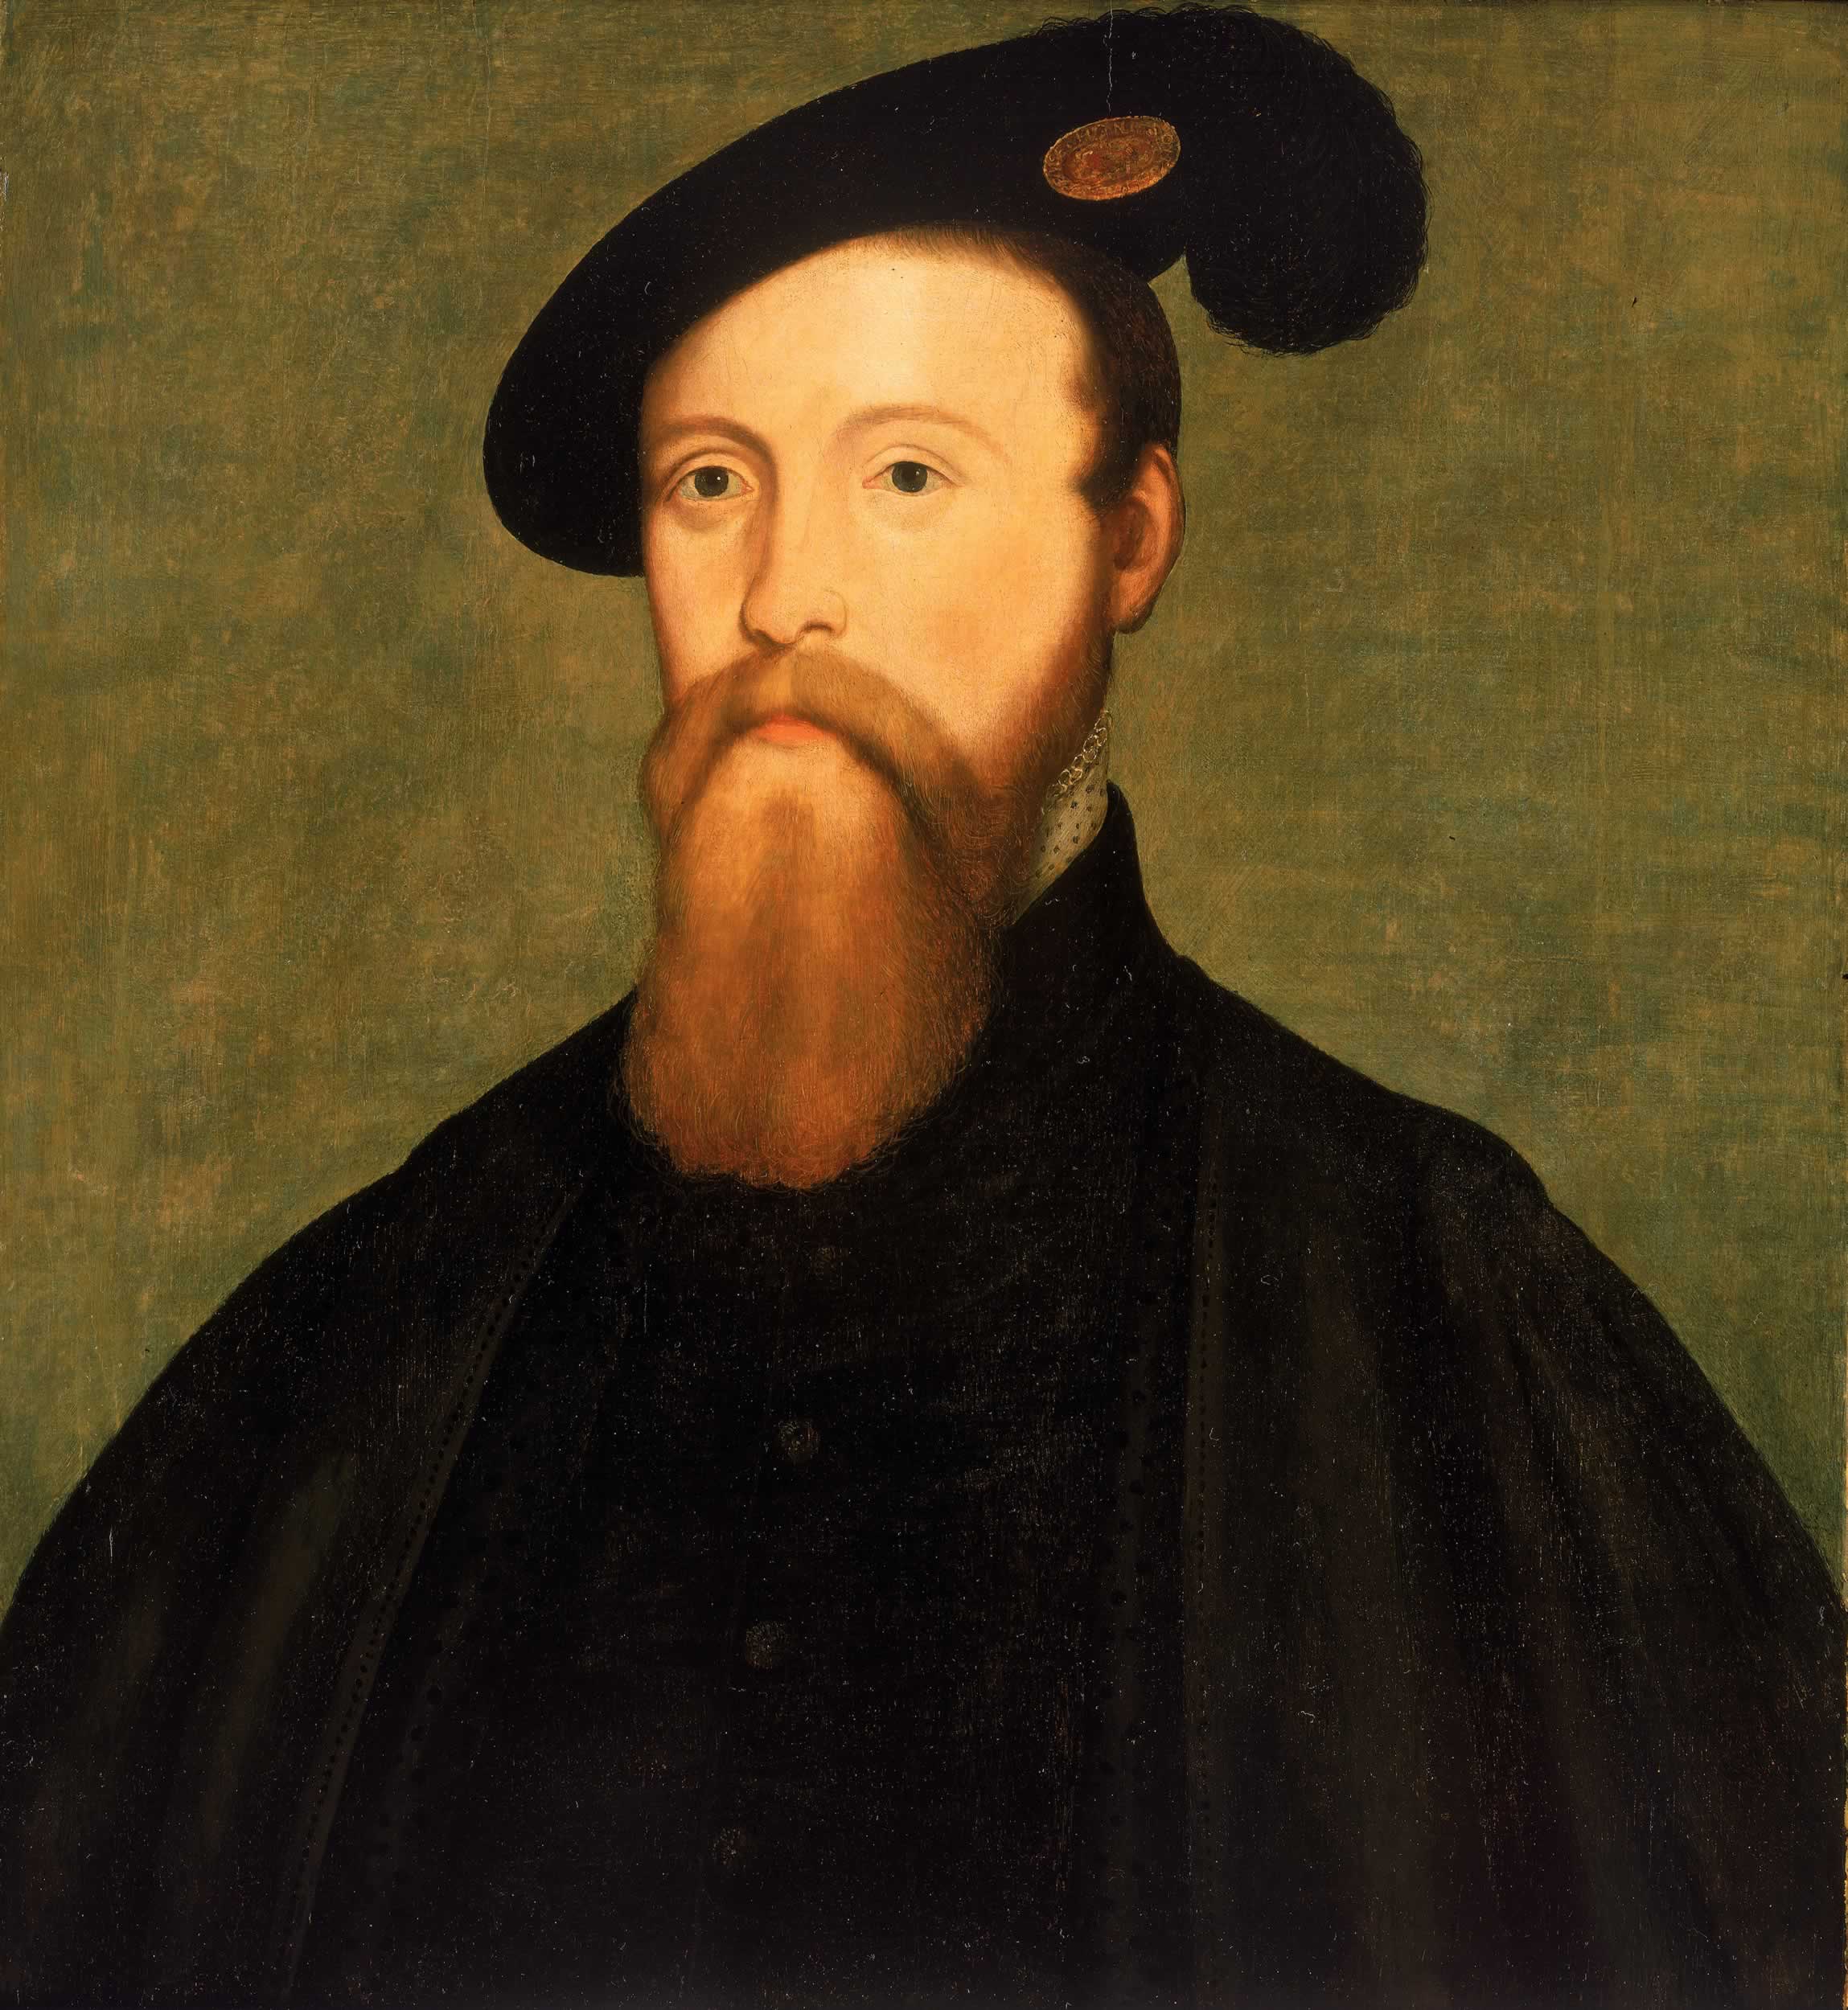 1549: Thomas Seymour, 1. Baron Seymour of Sudeley, englischer Edelmann, Heerführer, Diplomat und Politiker